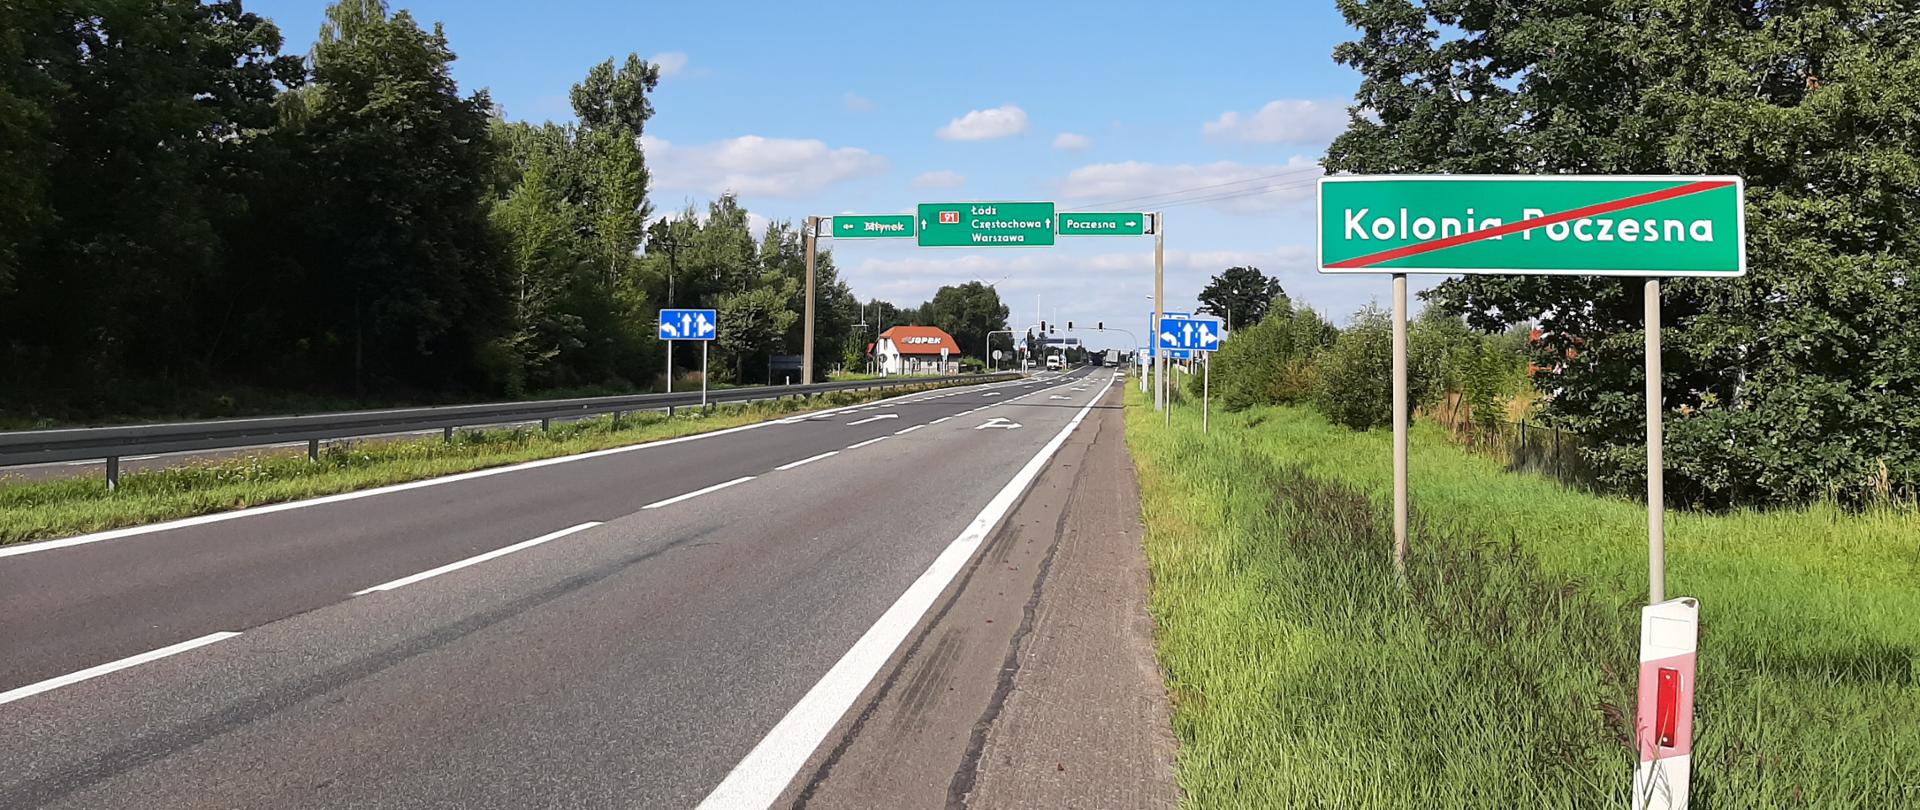 Fotografia dwuprzestrzennej drogi krajowej nr 91 na granicy Kolonii Poczesnej. Droga wyposażona jest w bariery ochronne oznakowanie pionowe i poziome. W tle widoczna sylabizacja świetlna. Droga otoczona jest zielenią przydrożną. 